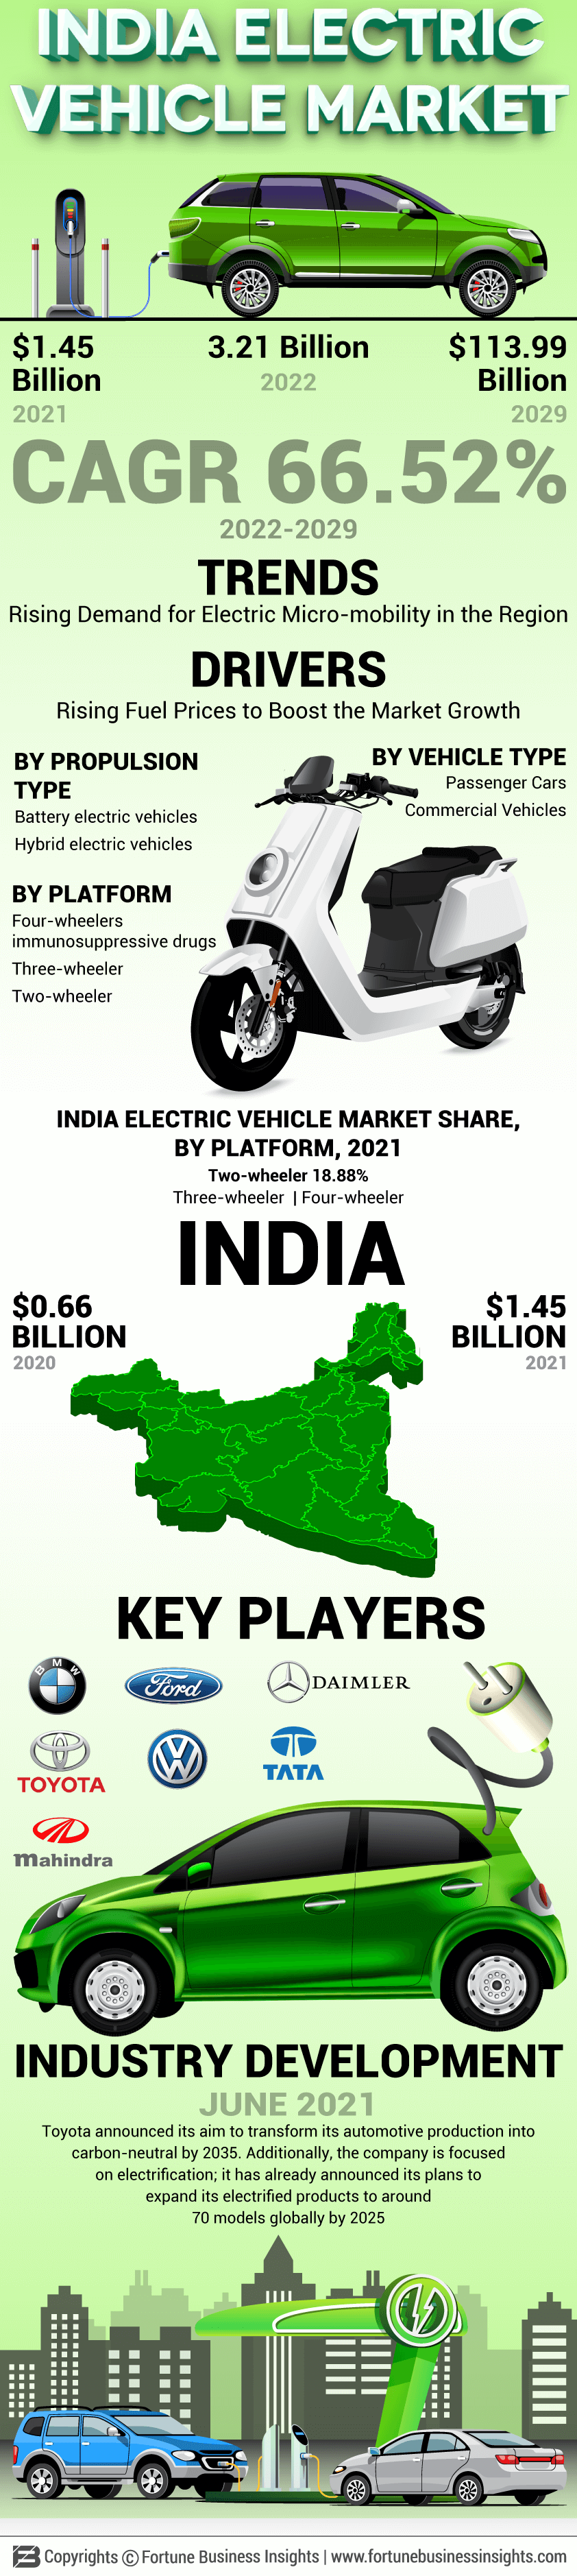 印度电动汽车市场